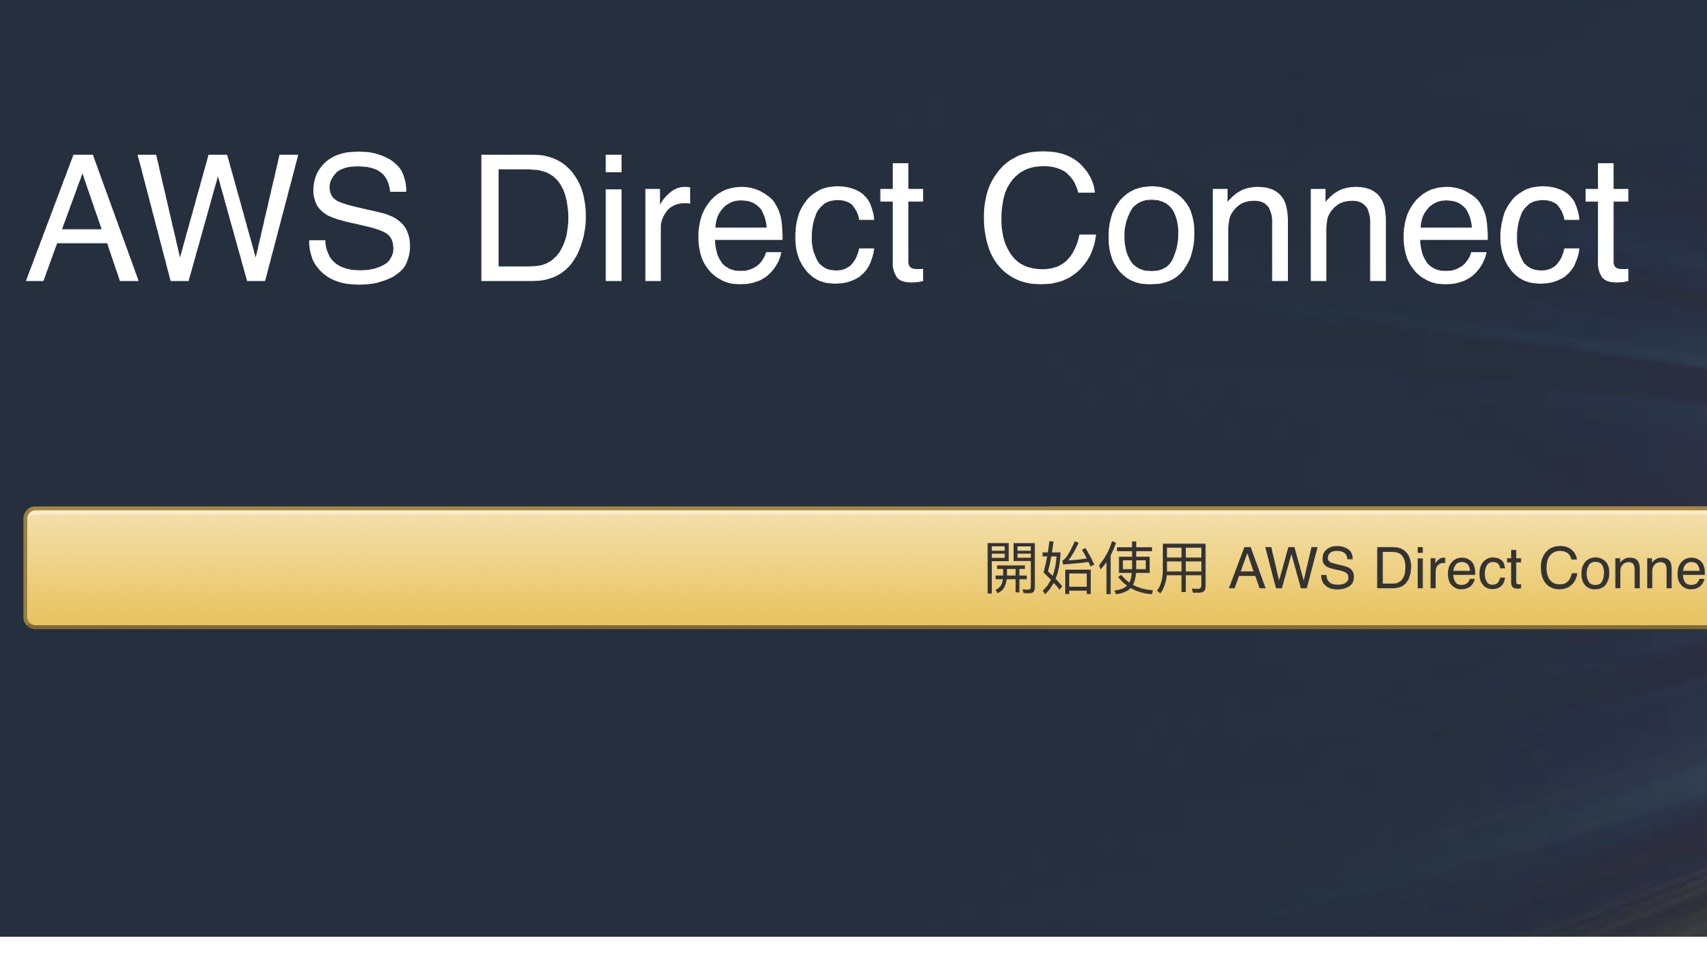 更穩定  更安全 更便宜！中華電信提供AWS Direct Connect服務